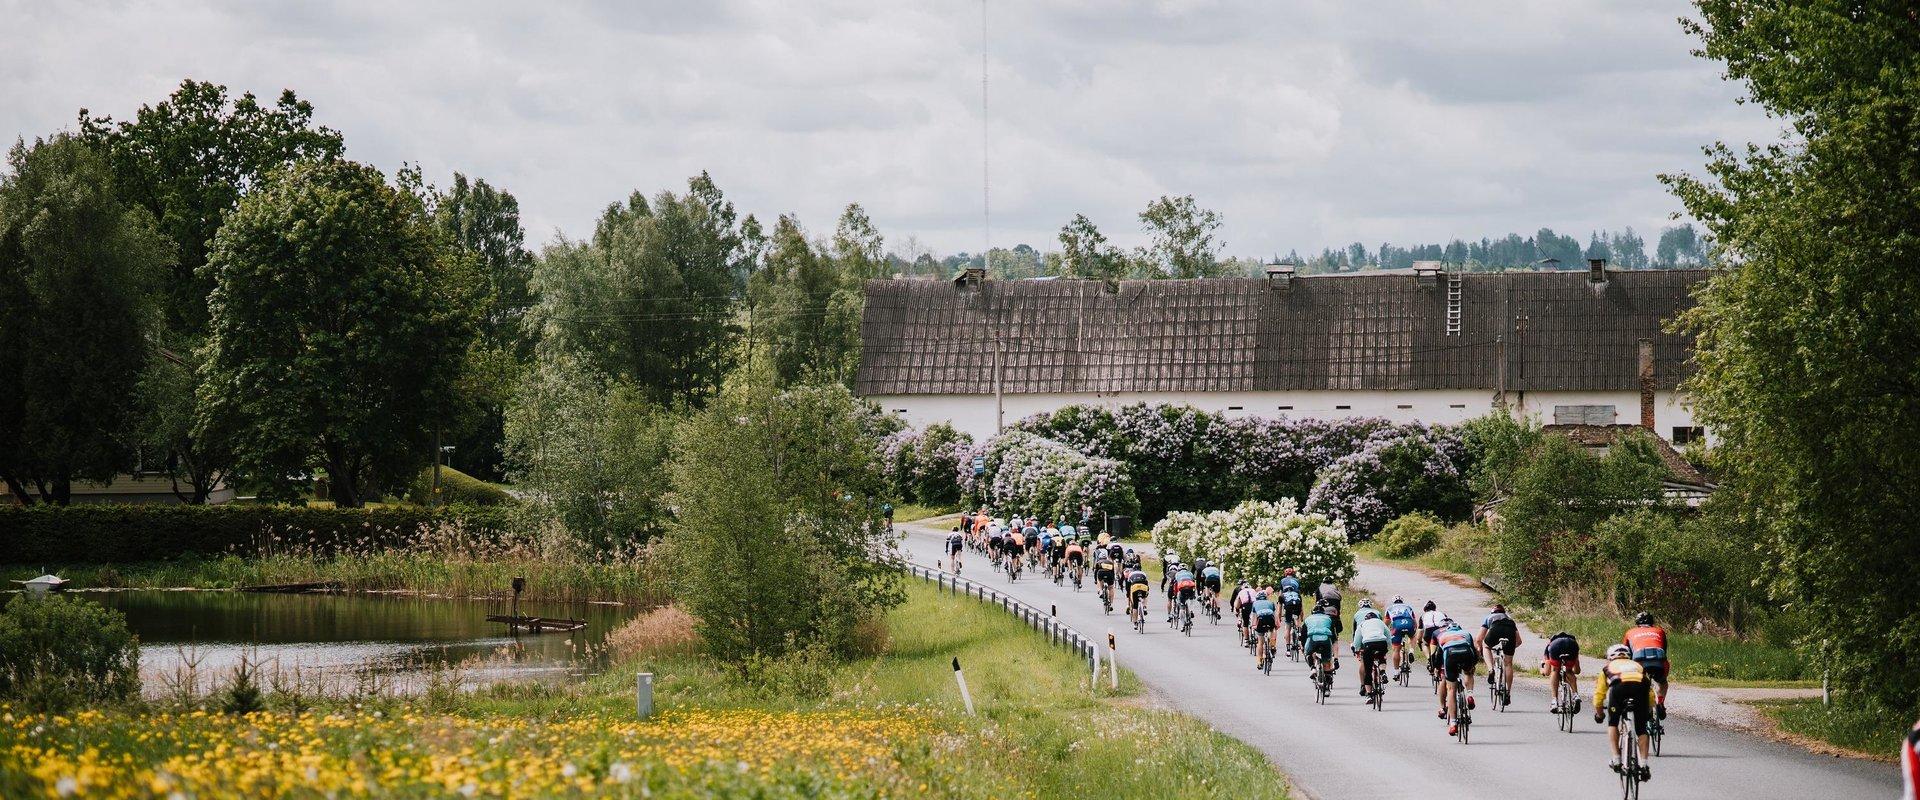 Toukokuun viimeisenä viikonloppuna Tartosta tulee todellinen pyöräilymekka - silloin järjestetään historialtaan arvokas Tartu Rattaralli! Aloitus ja p